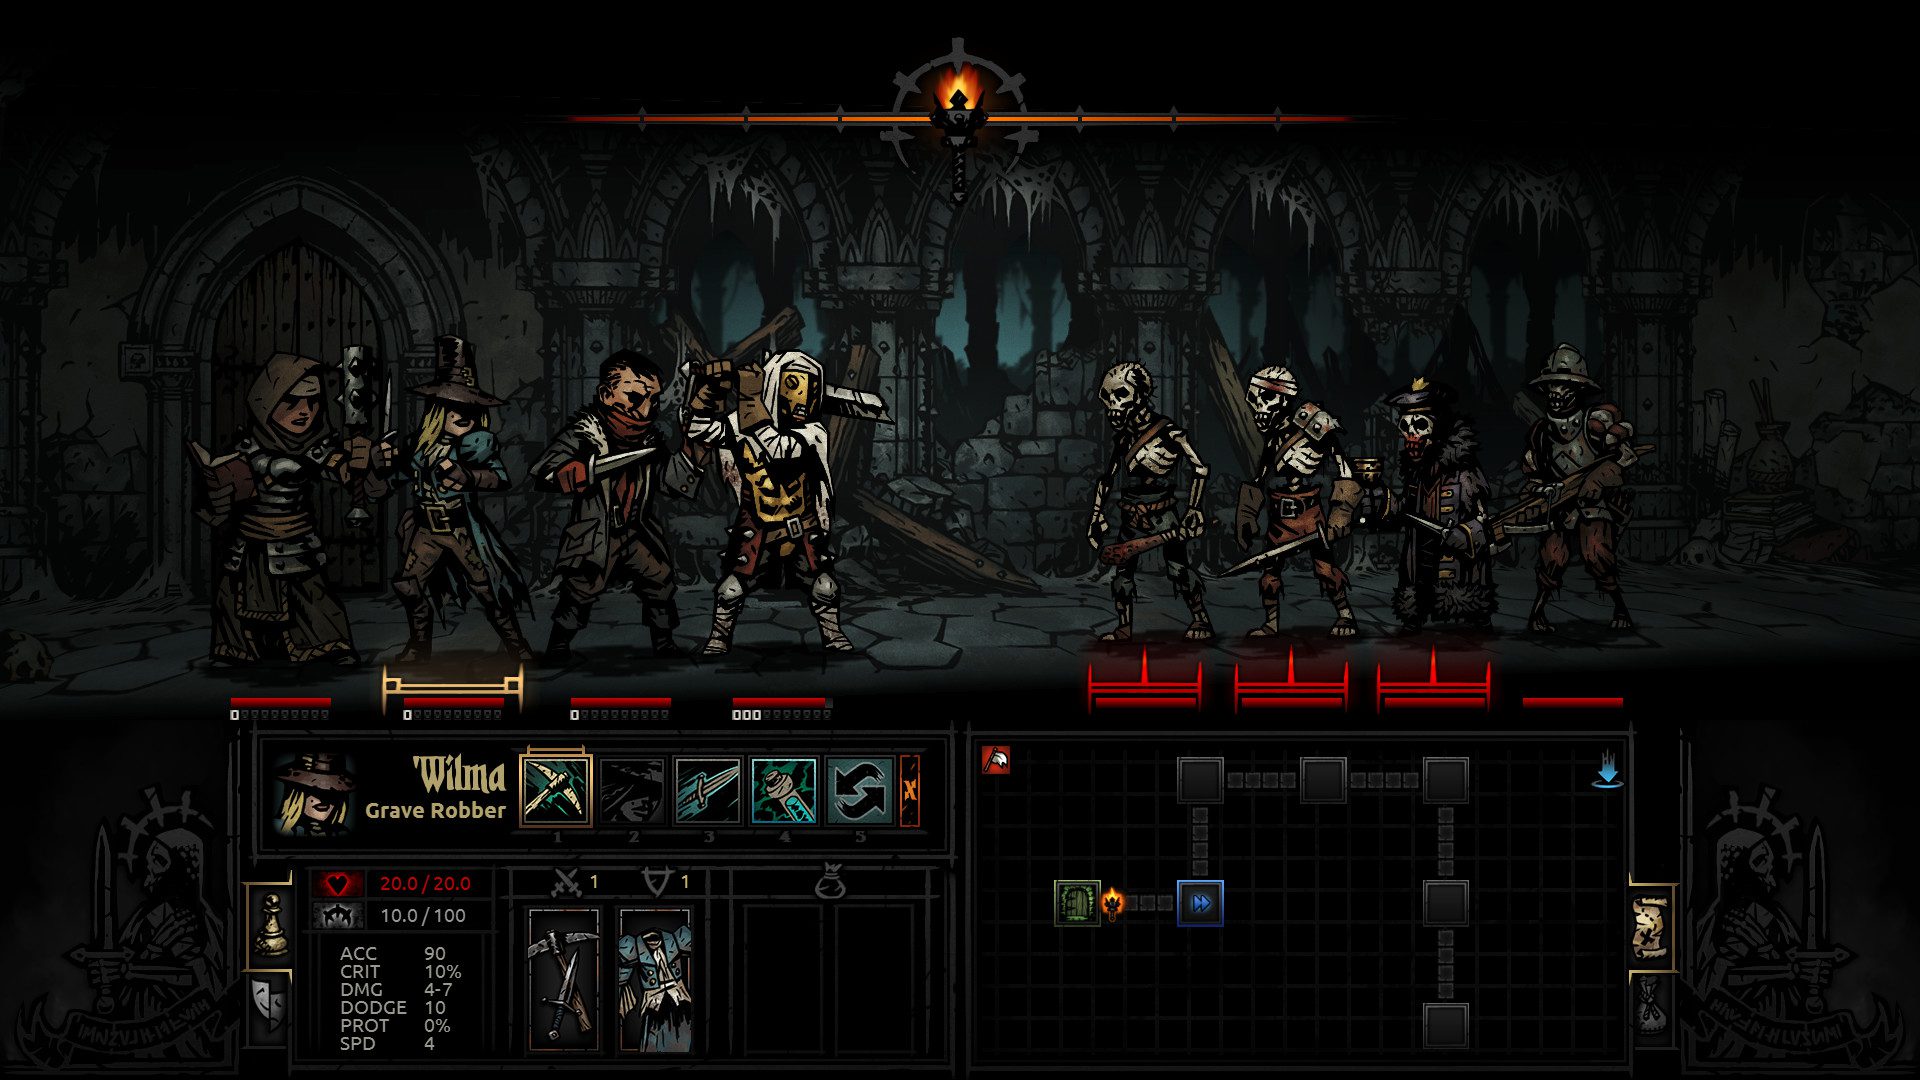 Darkest dungeon battle screenshot